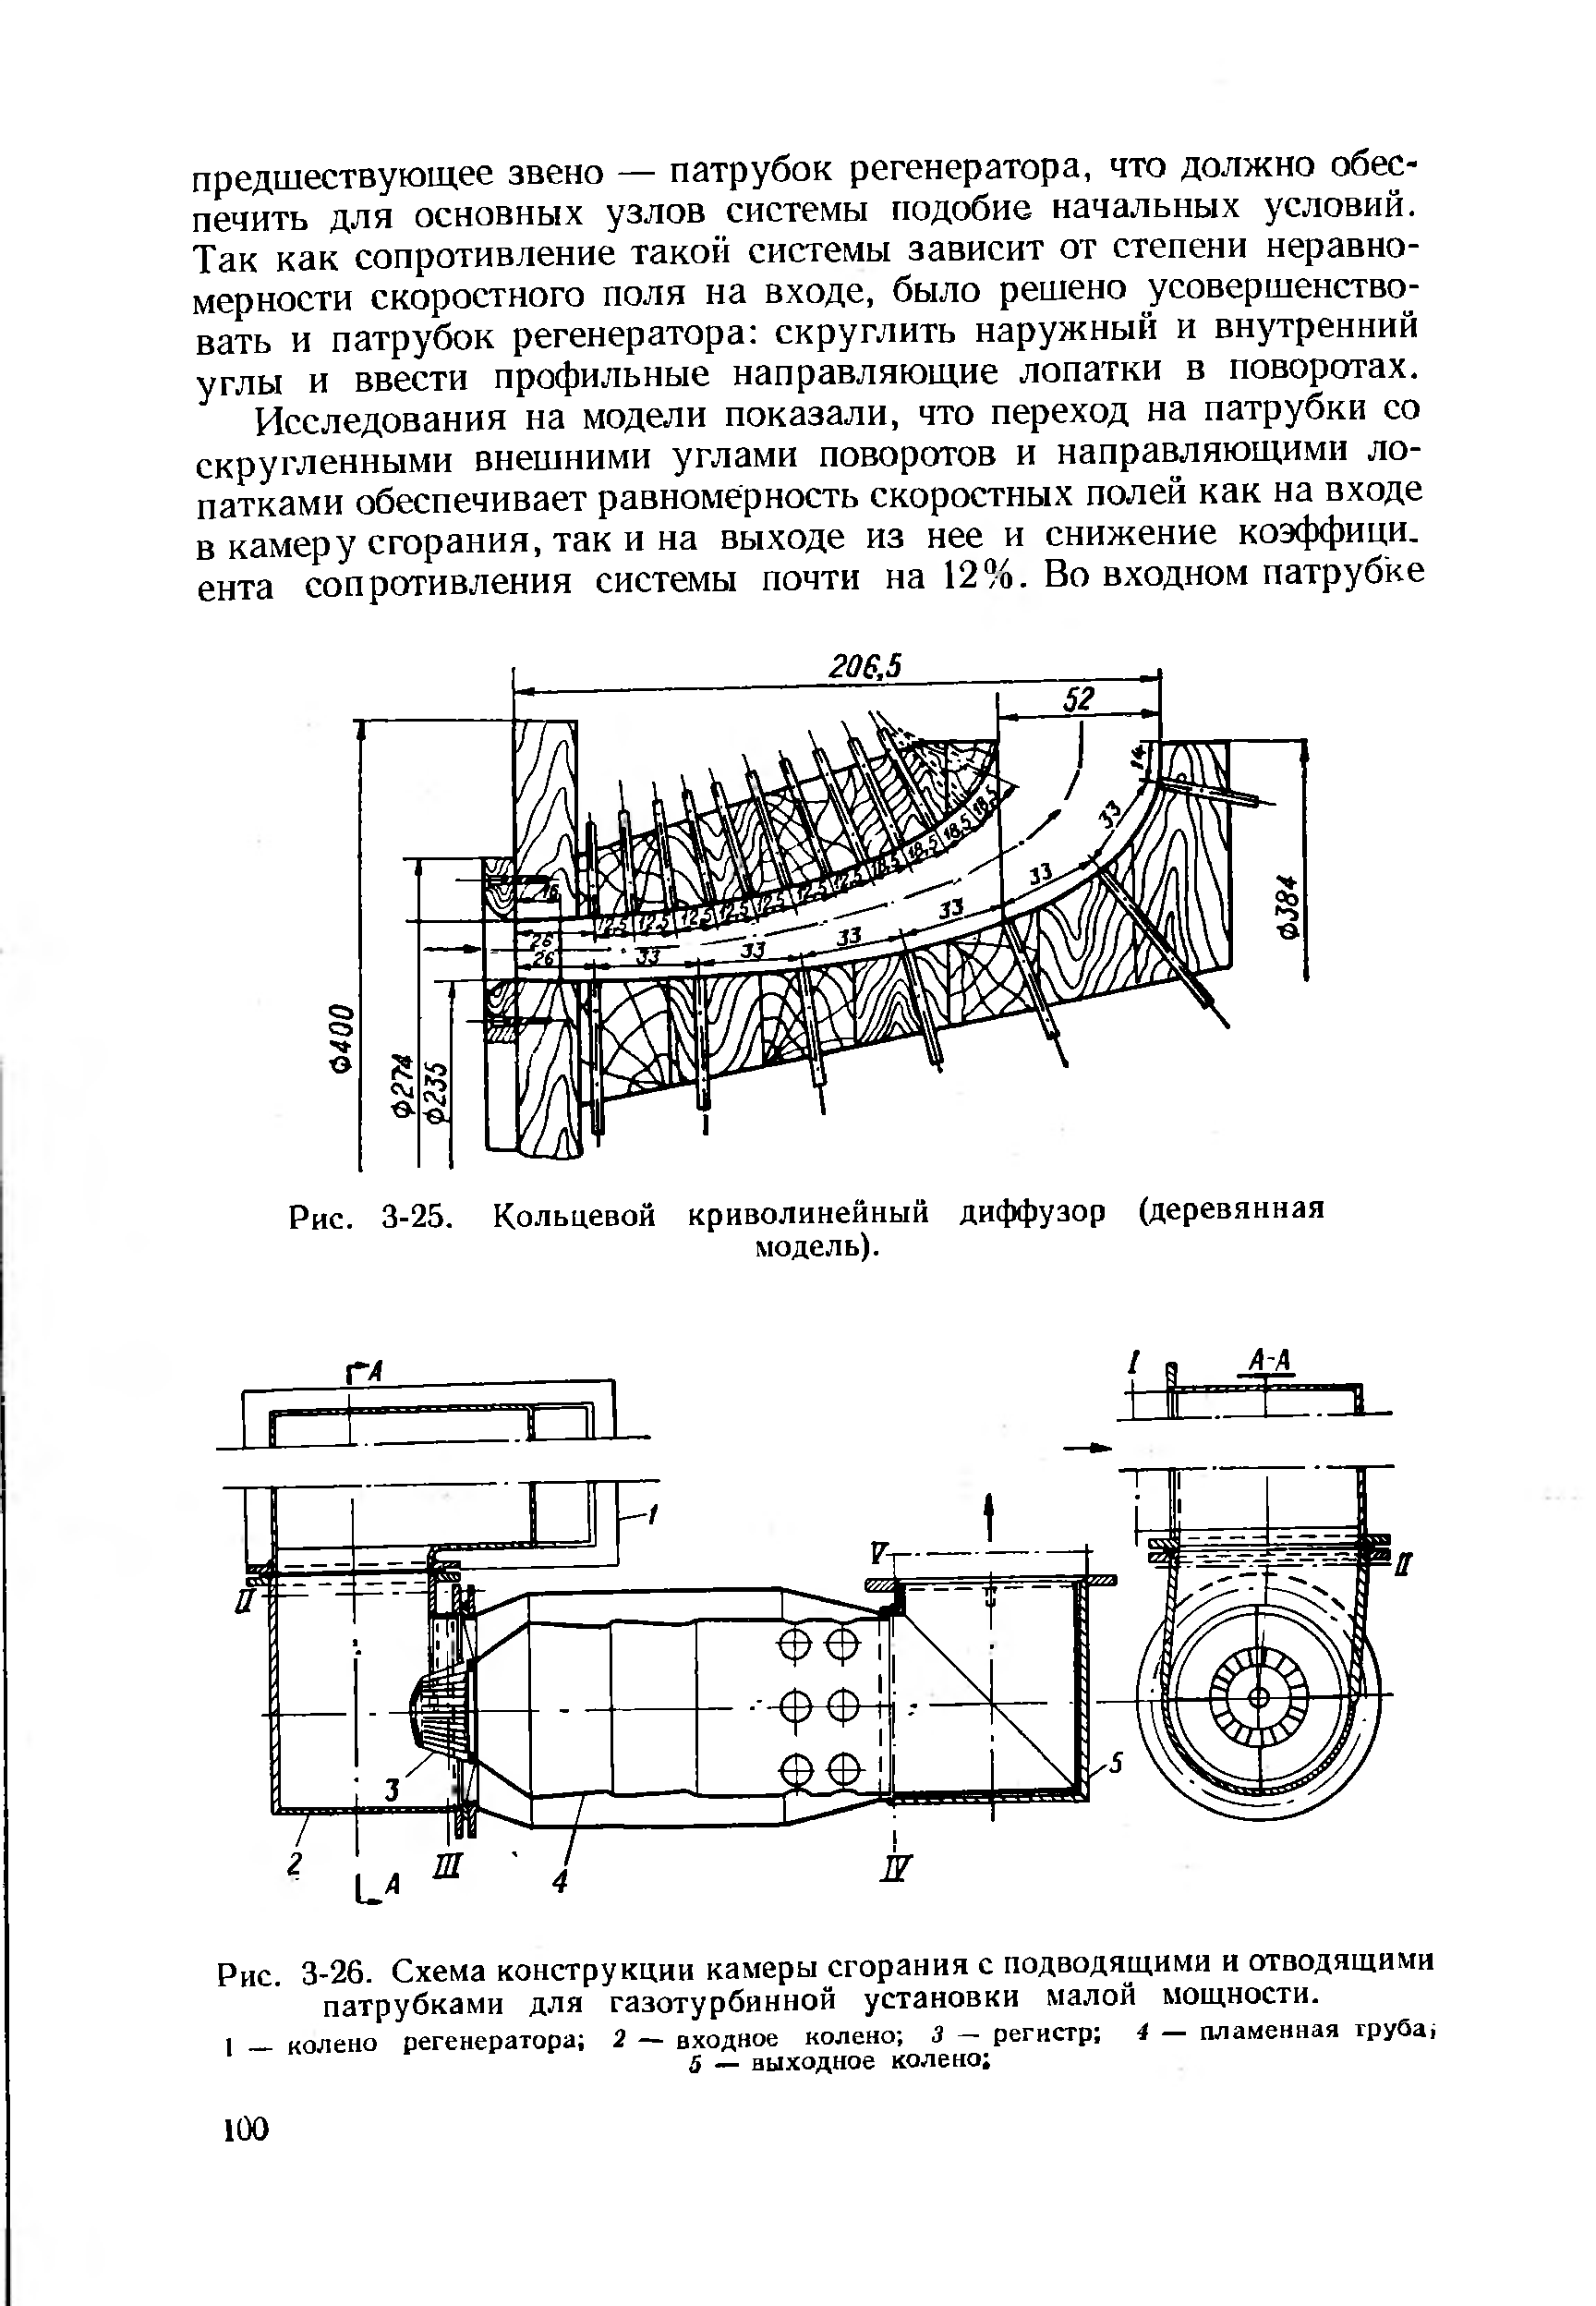 Рис. 3-26. Схема конструкции камеры сгорания с подводящими и отводящими патрубками для <a href="/info/731">газотурбинной установки</a> малой мощности.
